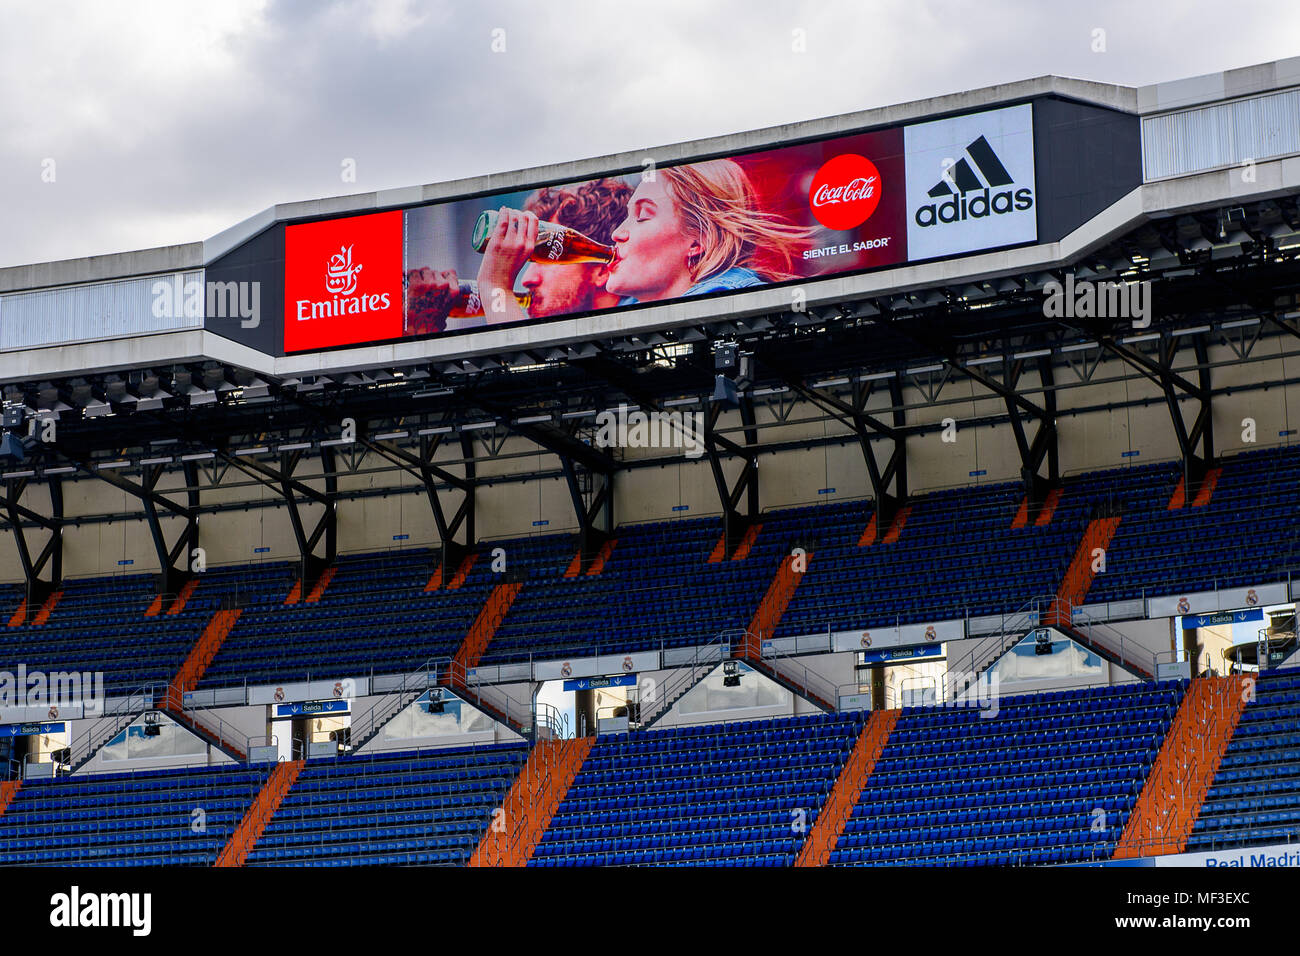 MADRID - 14 de abril de 2018: Emirates, Coca Cola, Adidas logos en la pantalla del estadio Santiago Bernabeu, la casa de área del club de fútbol Real Ma Foto de stock